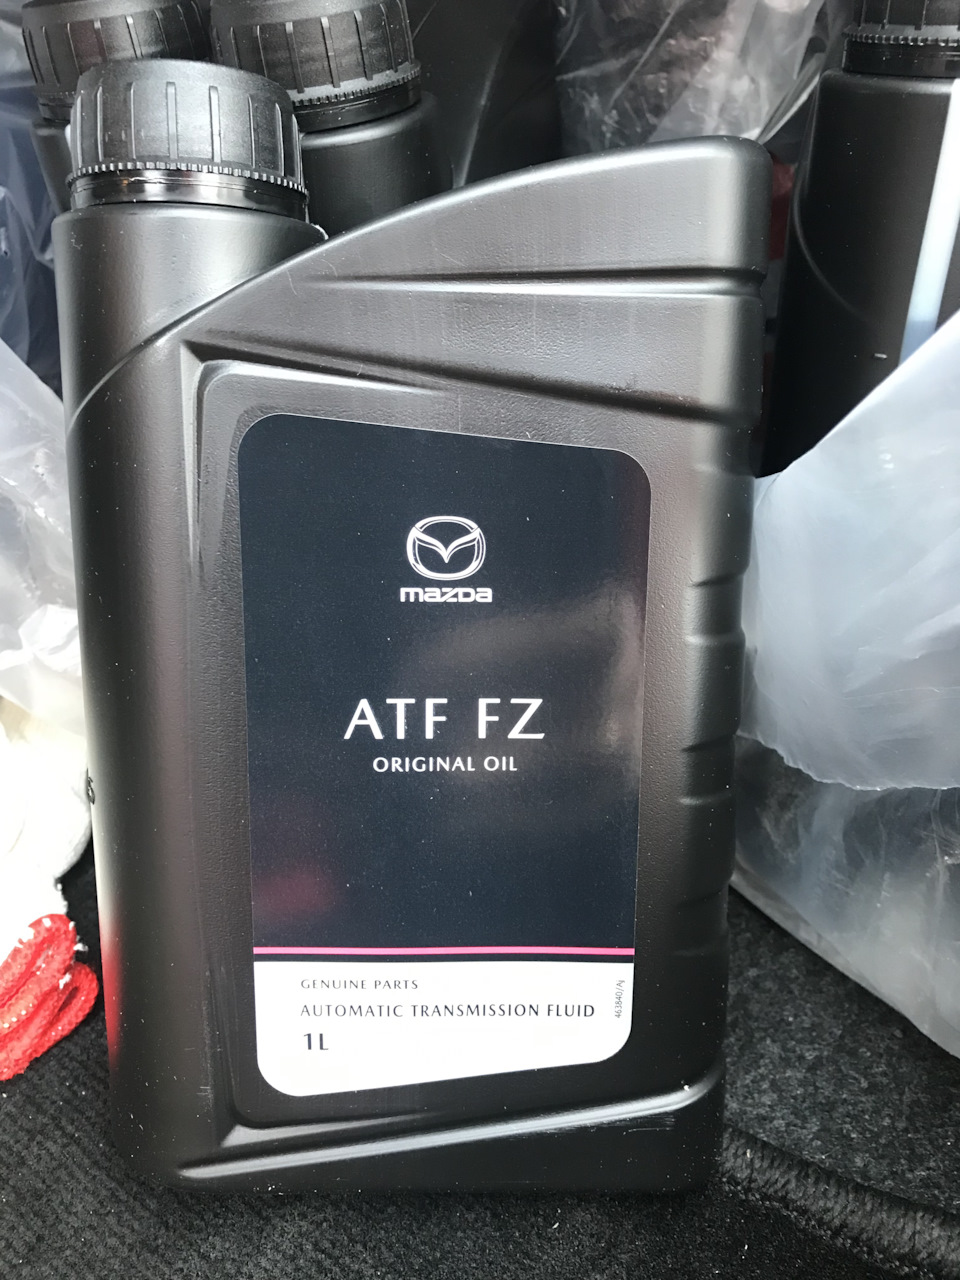 Atf zf. Mazda ATF FZ. Mazda Original Oil ATF FZ. ATF FZ Mazda 5л. Mazda ATF FZ 4 литра артикул оригинал.